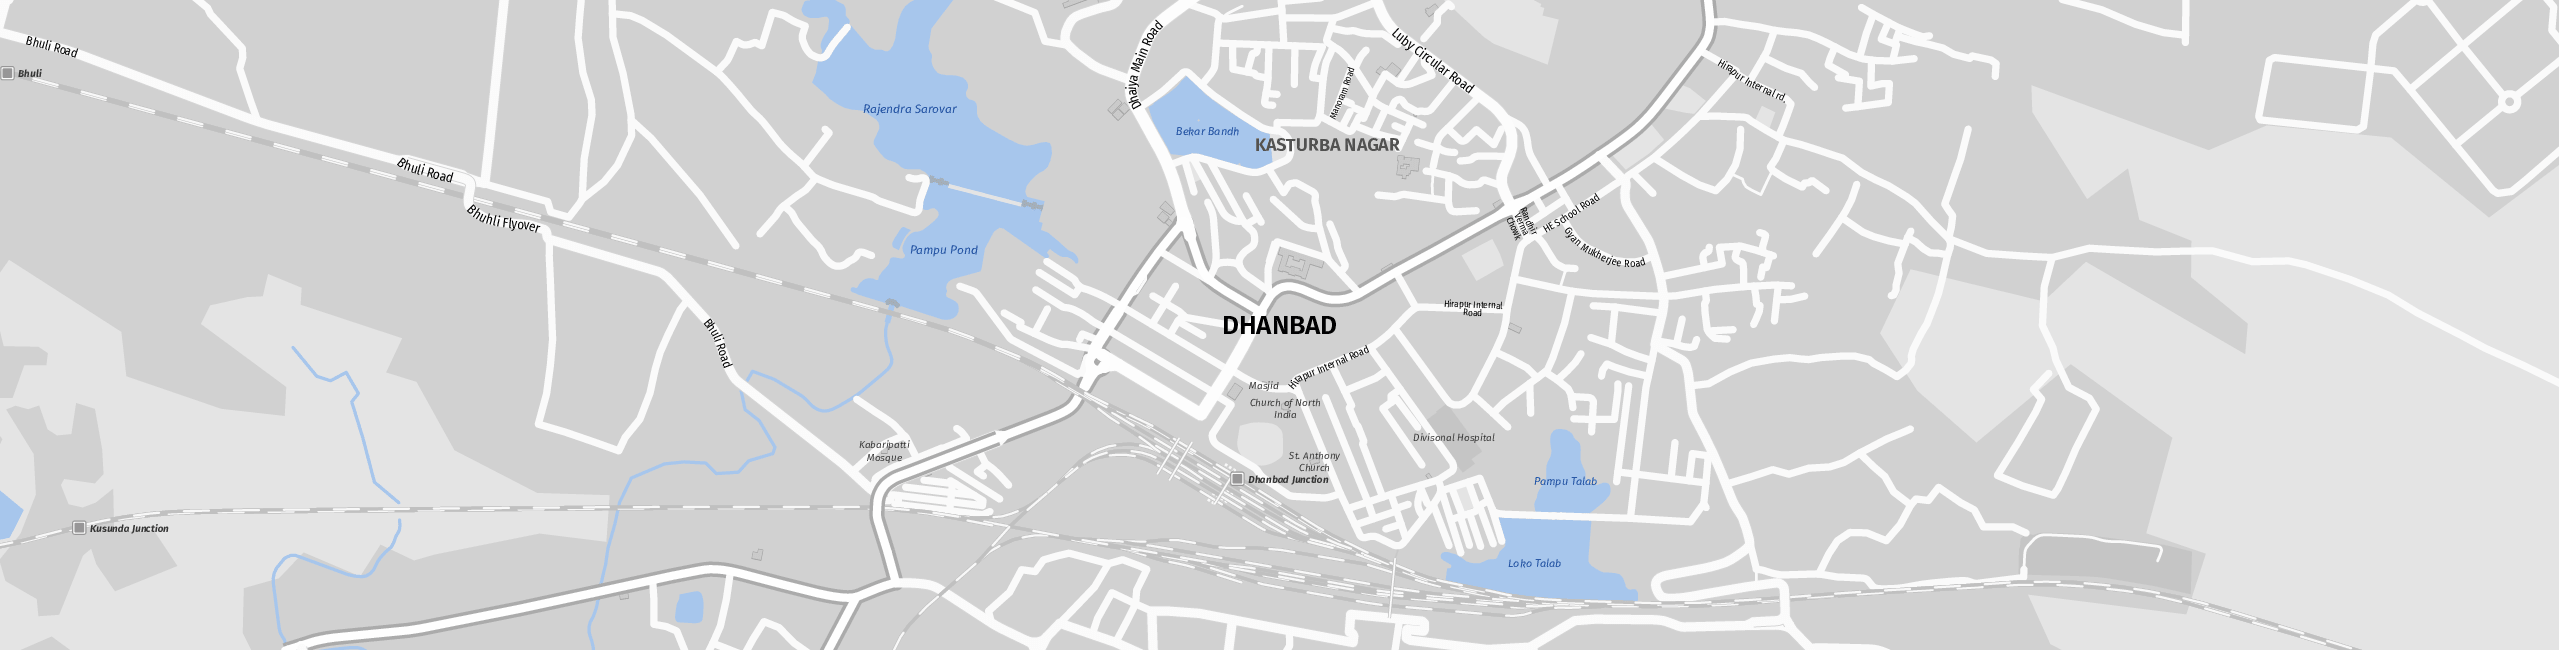 Stadtplan Dhanbad zum Downloaden.